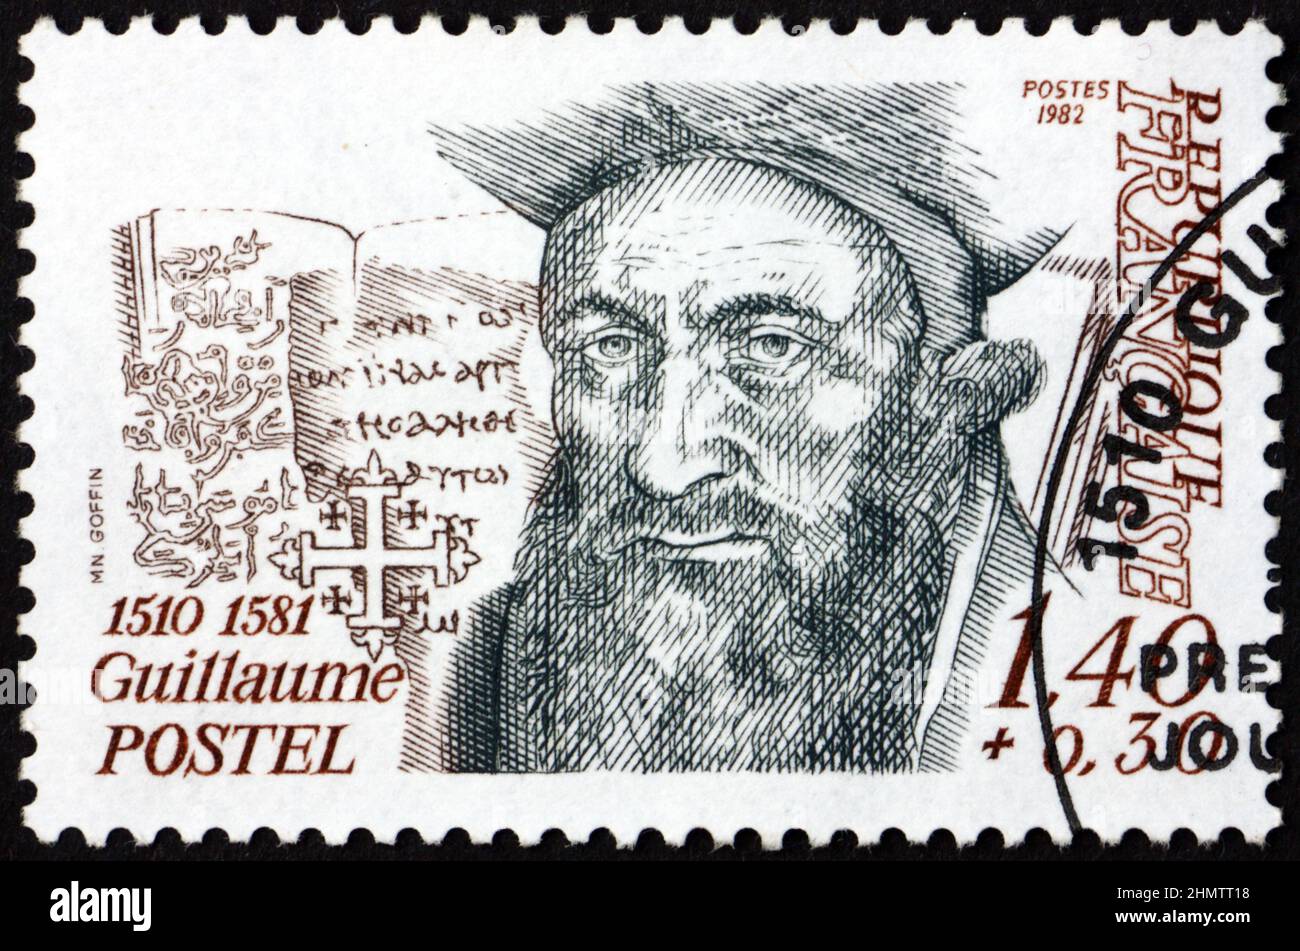 FRANCE - VERS 1981 : un timbre imprimé en France montre Guillaume Postel (1510-1581), linguiste français, astronome et diplomate, vers 1981 Banque D'Images